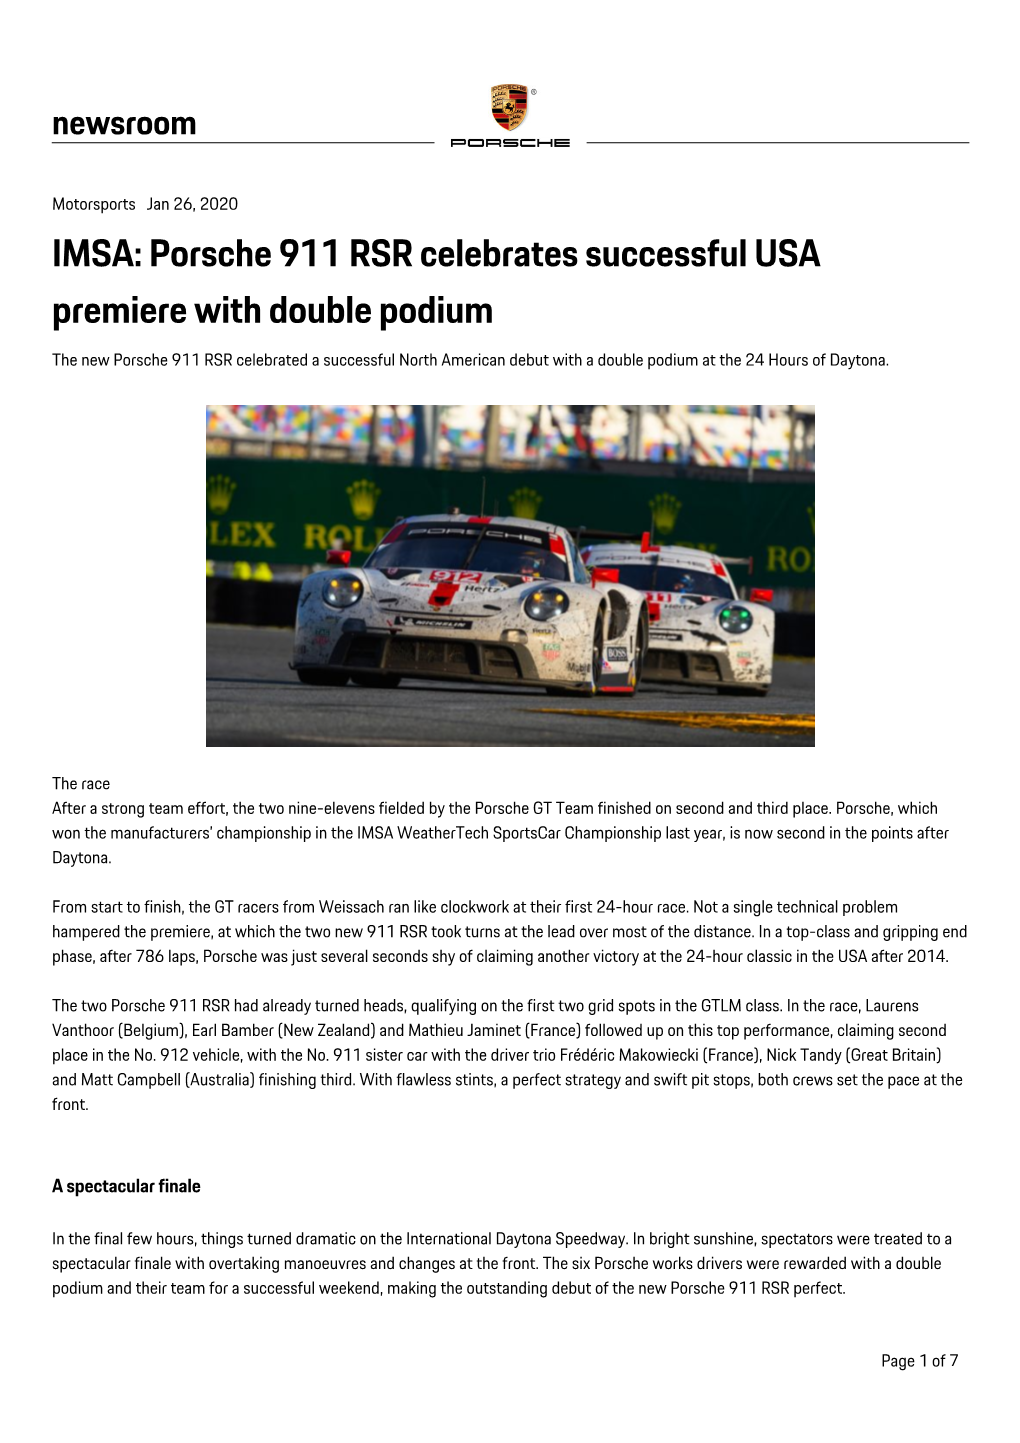 IMSA: Porsche 911 RSR Celebrates Successful USA Premiere With